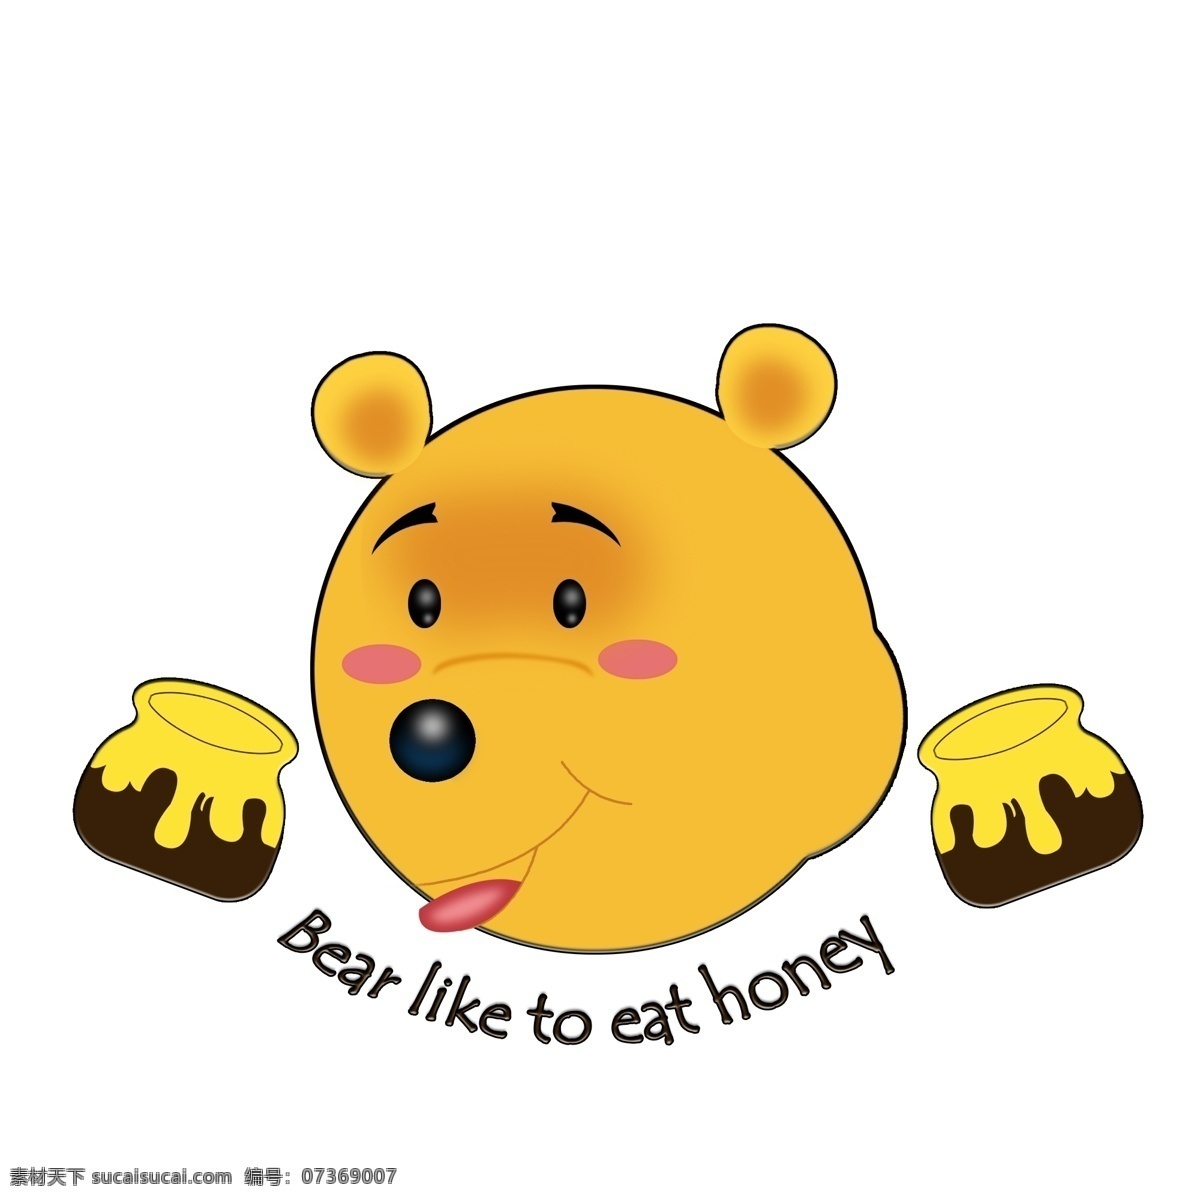 可爱 小 熊 透明 图 小熊 几何形 圆润 bear 平面设计 免抠 简单 小清新 卡通 蜂蜜 甜而不腻